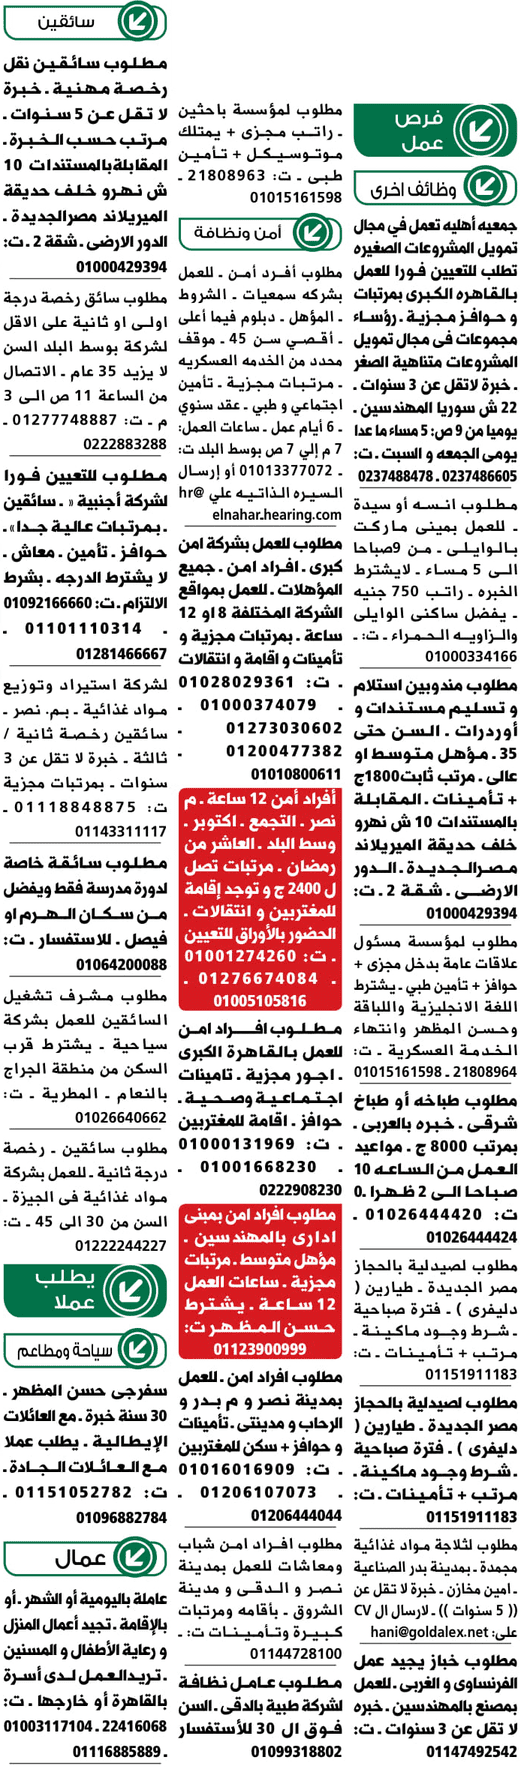 وظائف جريدة الوسيط المصرية اليوم 11/2/2019 1